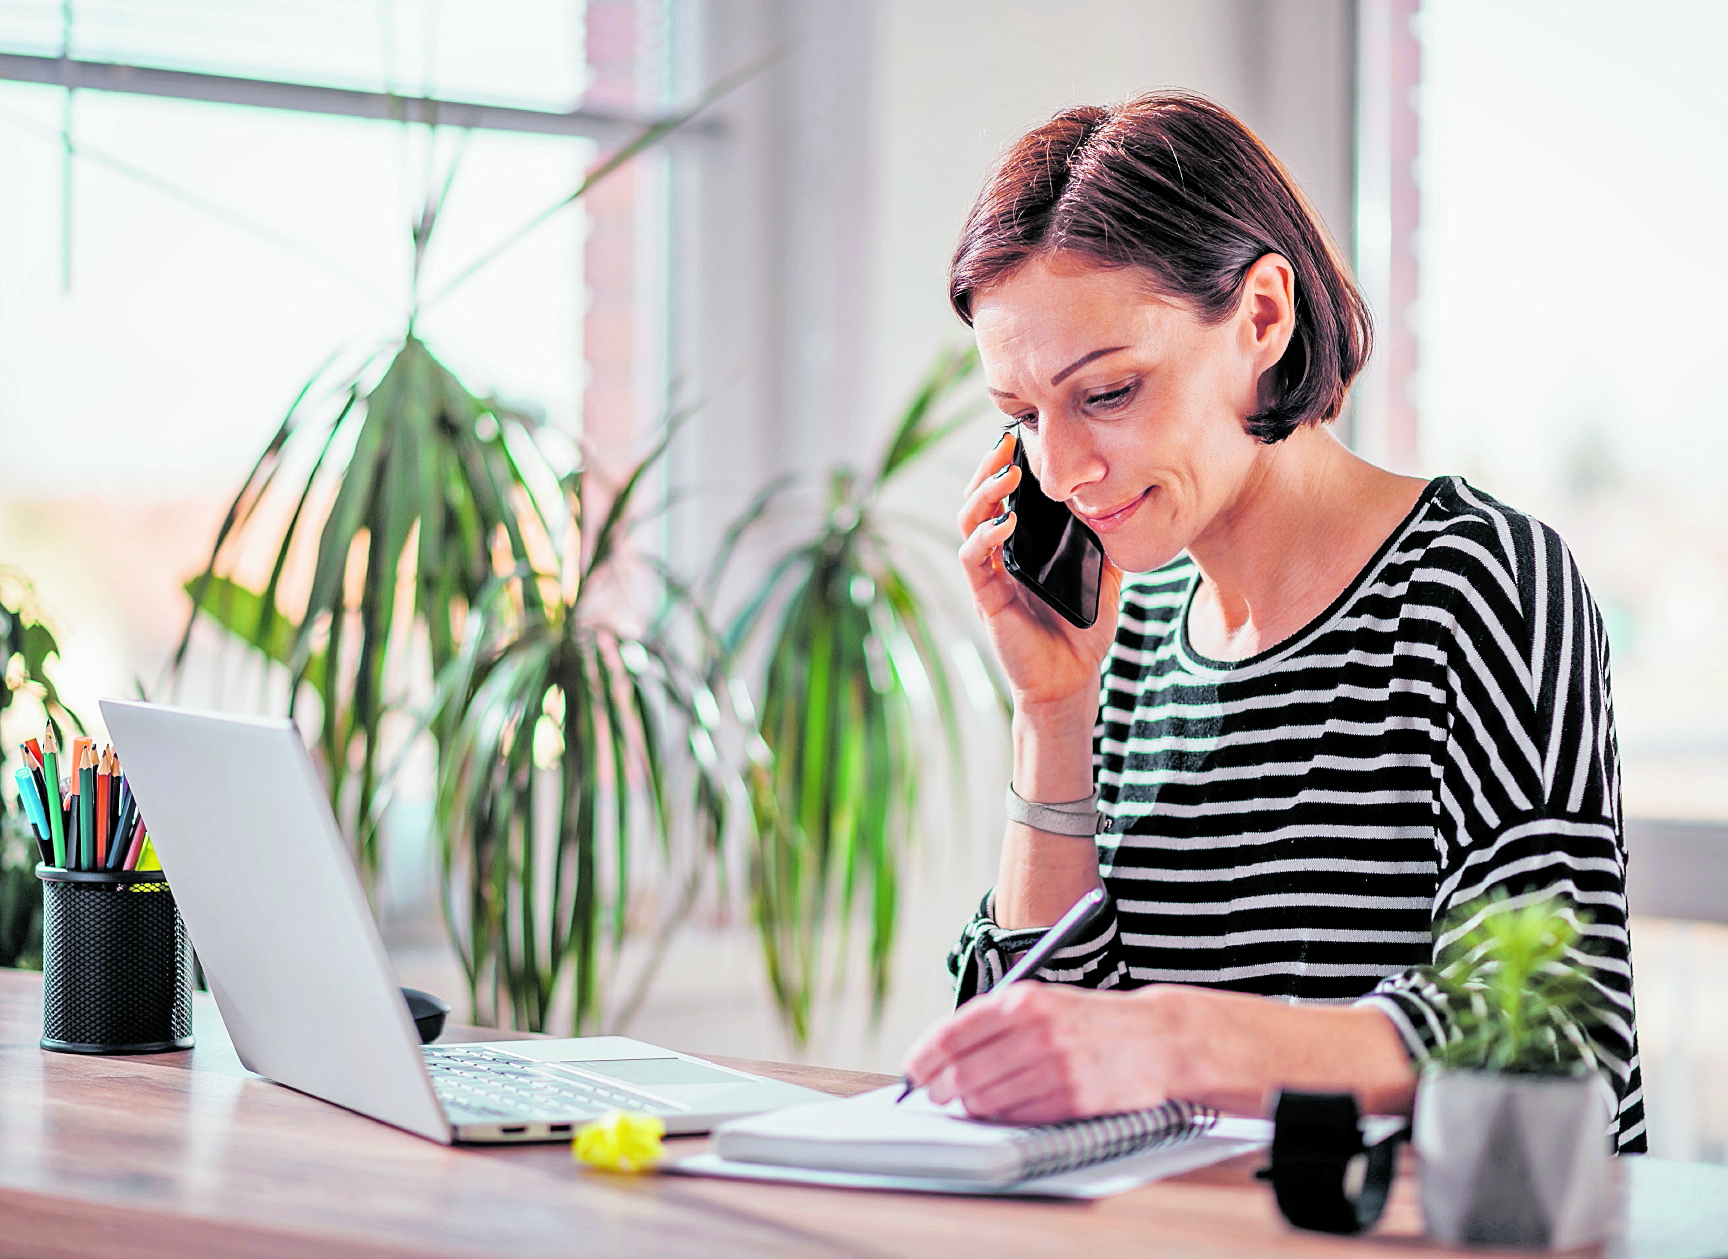 Establecer un horario de entrada y salida, como si estuviera en la oficina, mientras trabaja desde casa le ayudará a ser más productivo. (Foto Prensa Libre: Shutterstock).